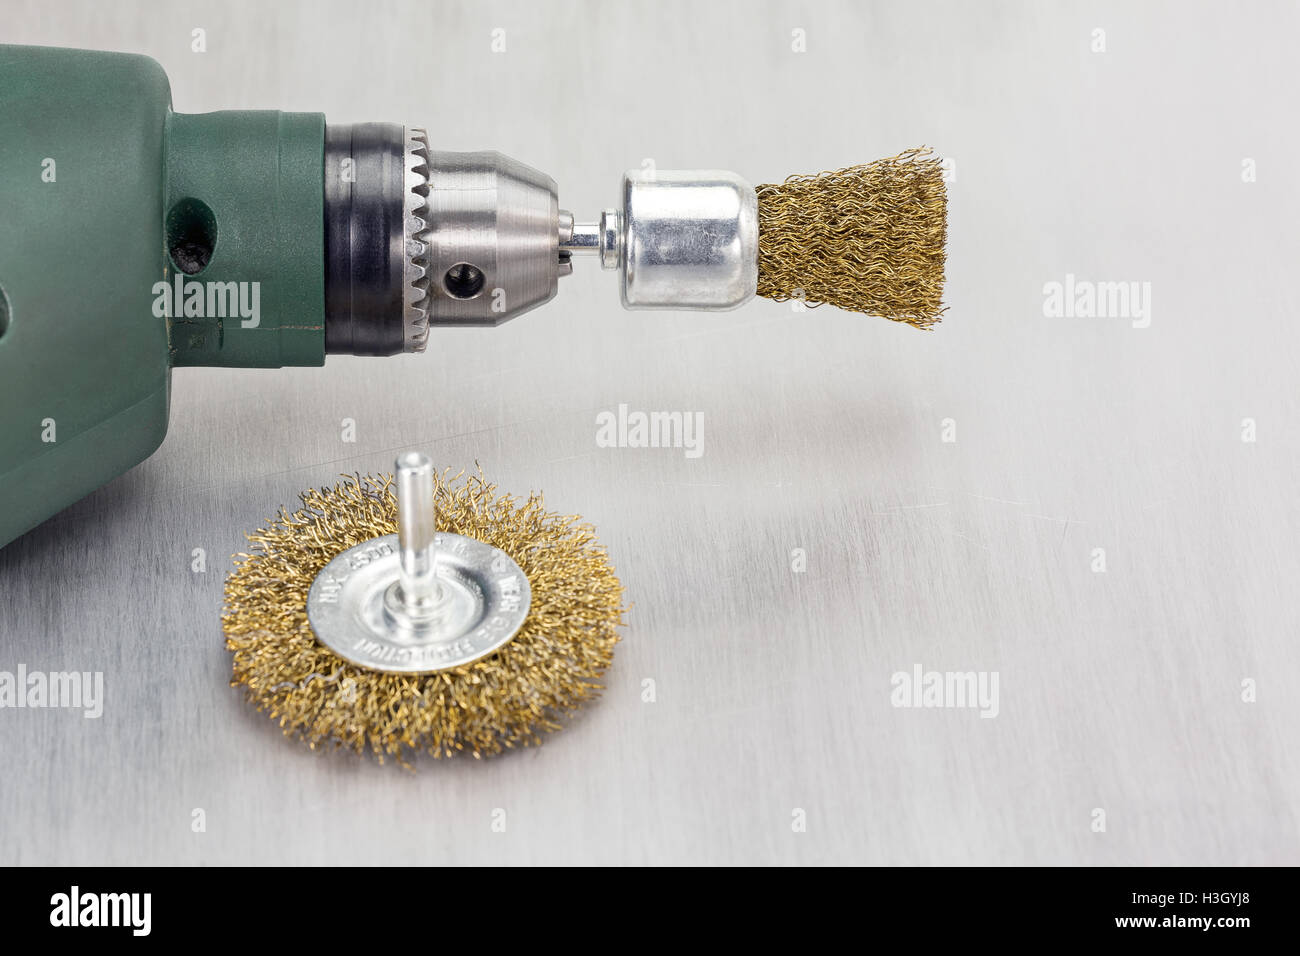 Bohrmaschine Mit Rotierenden Metall Bursten Auf Zerkratzten Hintergrund Stockfotografie Alamy